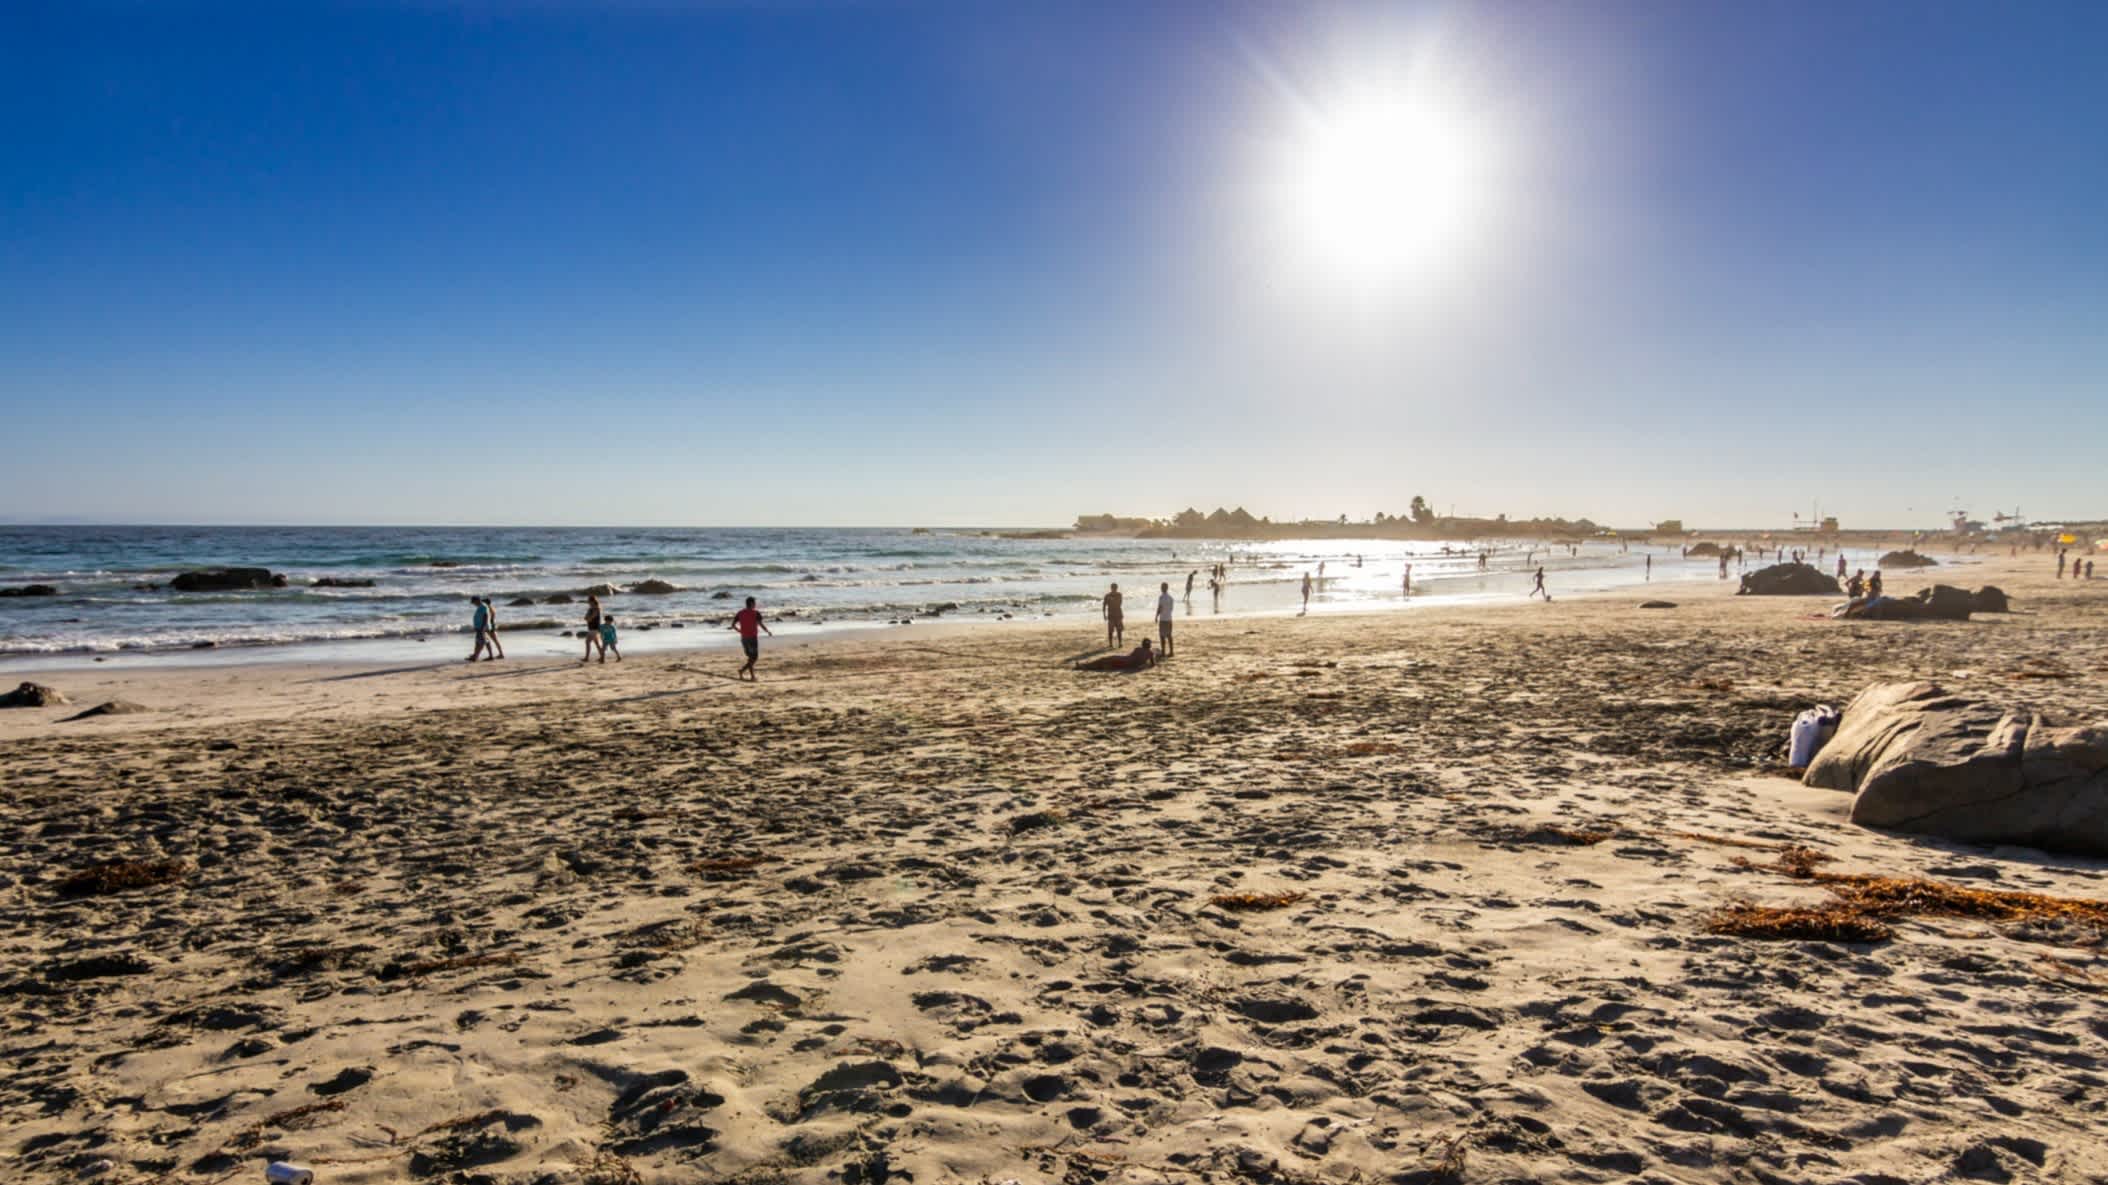 Bild vom goldsandigen Strand Las Tacas in der Weinregion Elqui in Chile bei herrlichem Sonnenschein und mit Strandbesuchern.